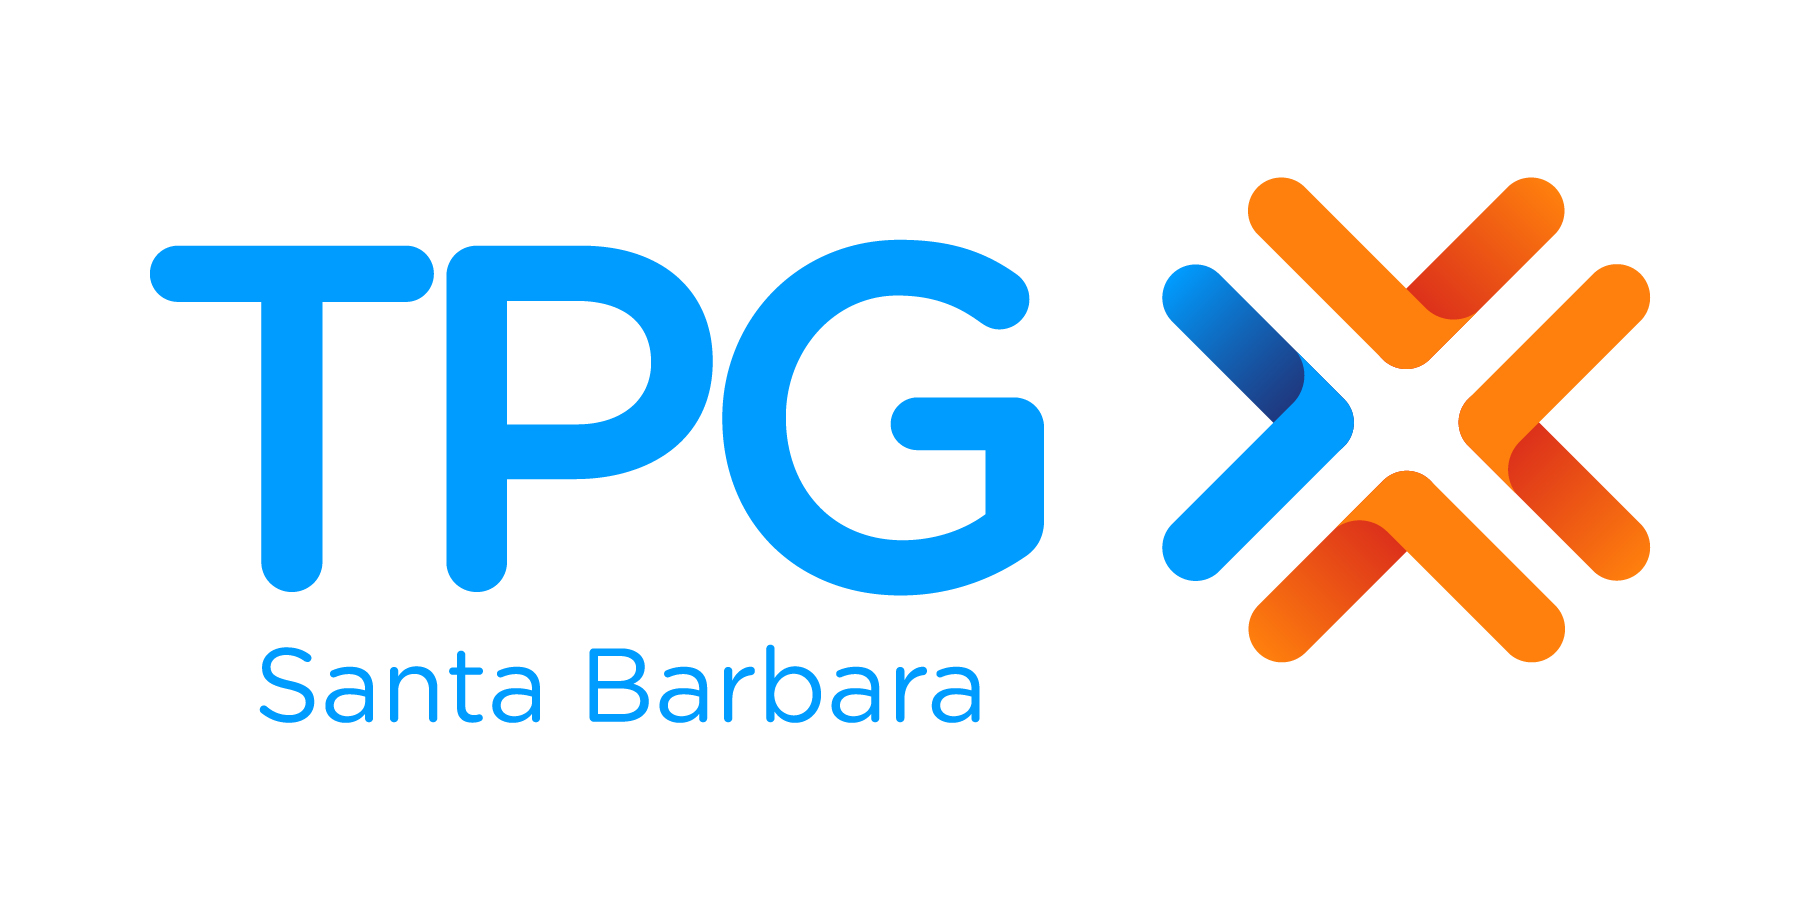 santa barbara tax products group logo